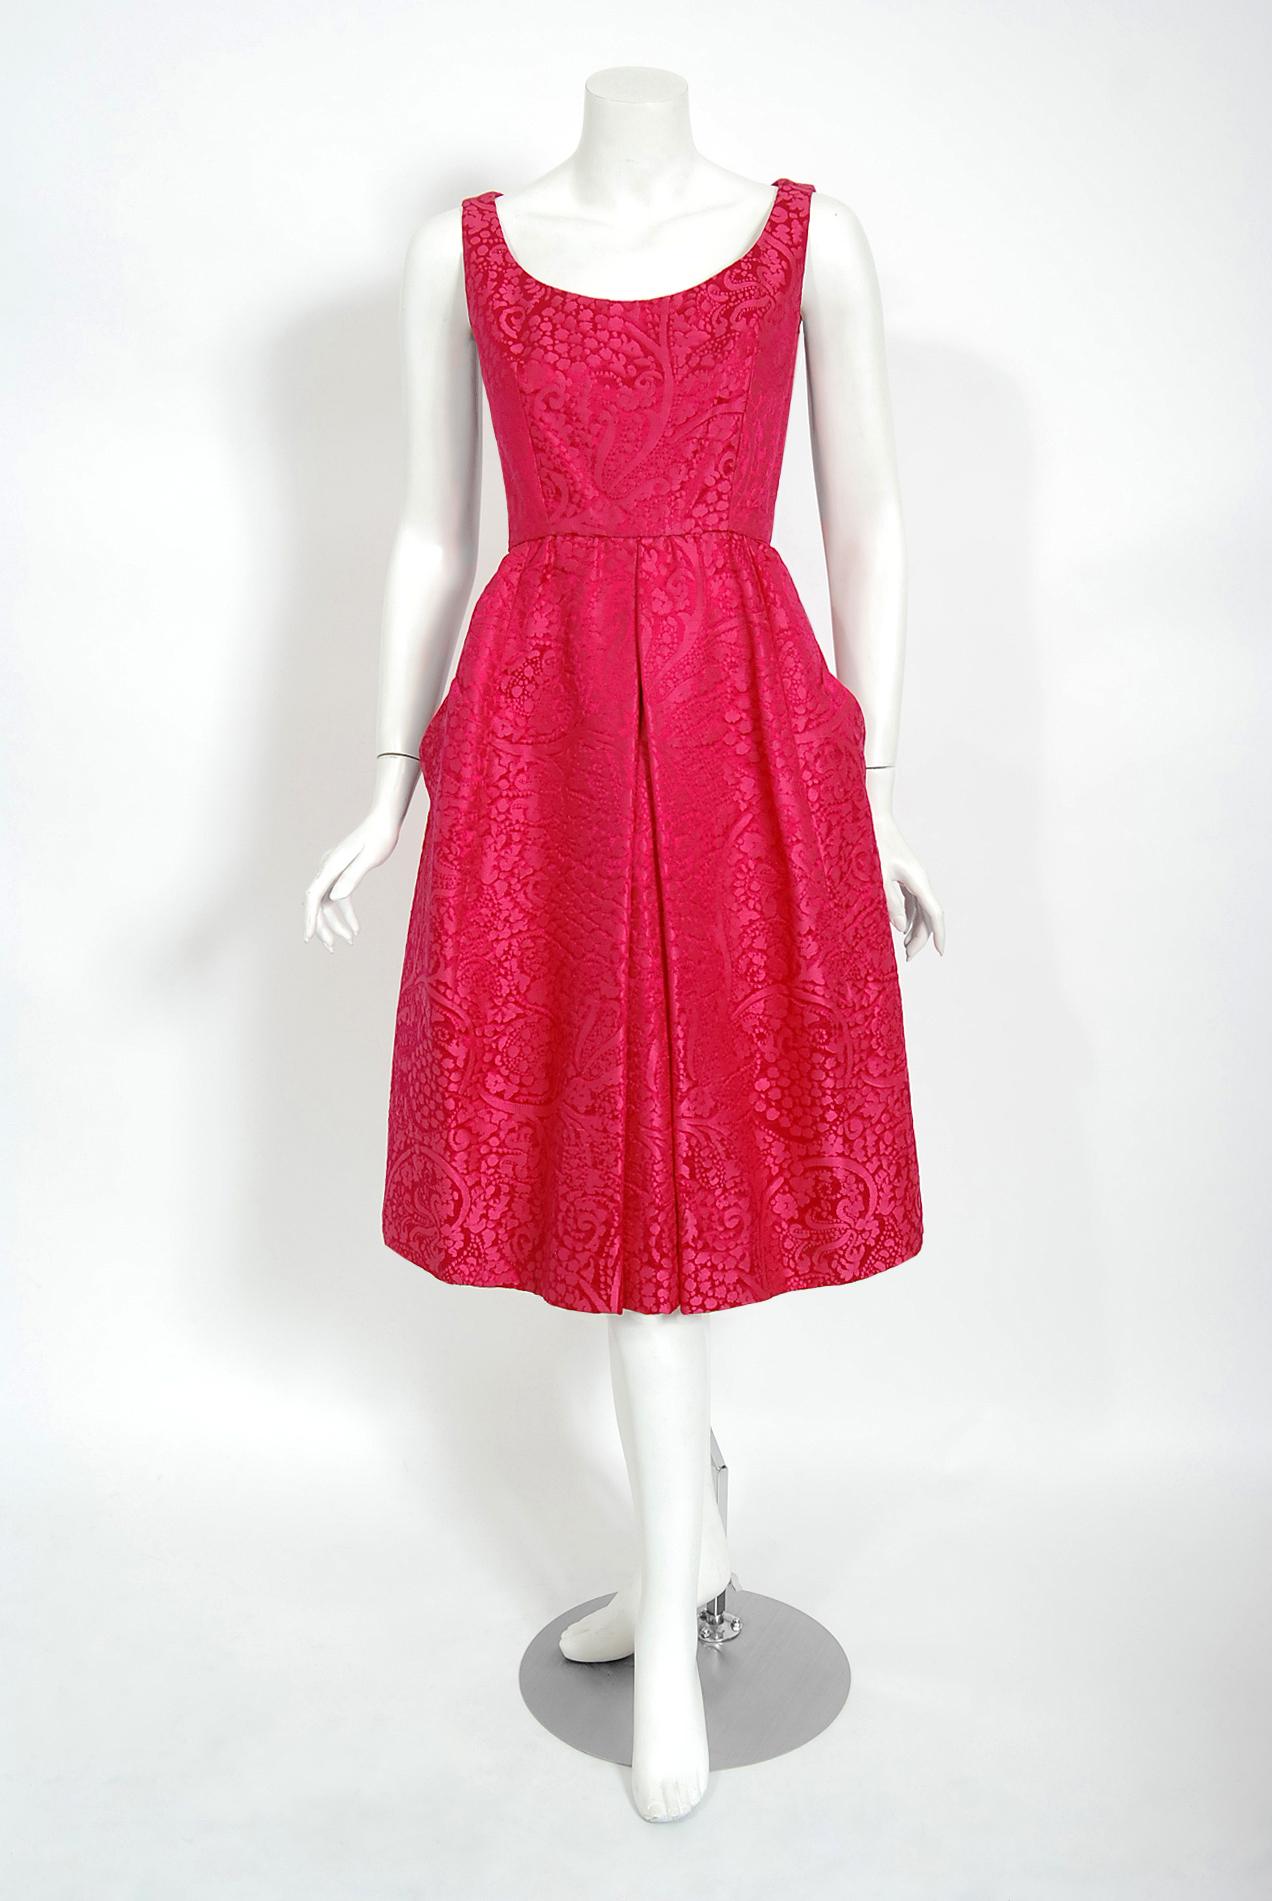 1962 dresses